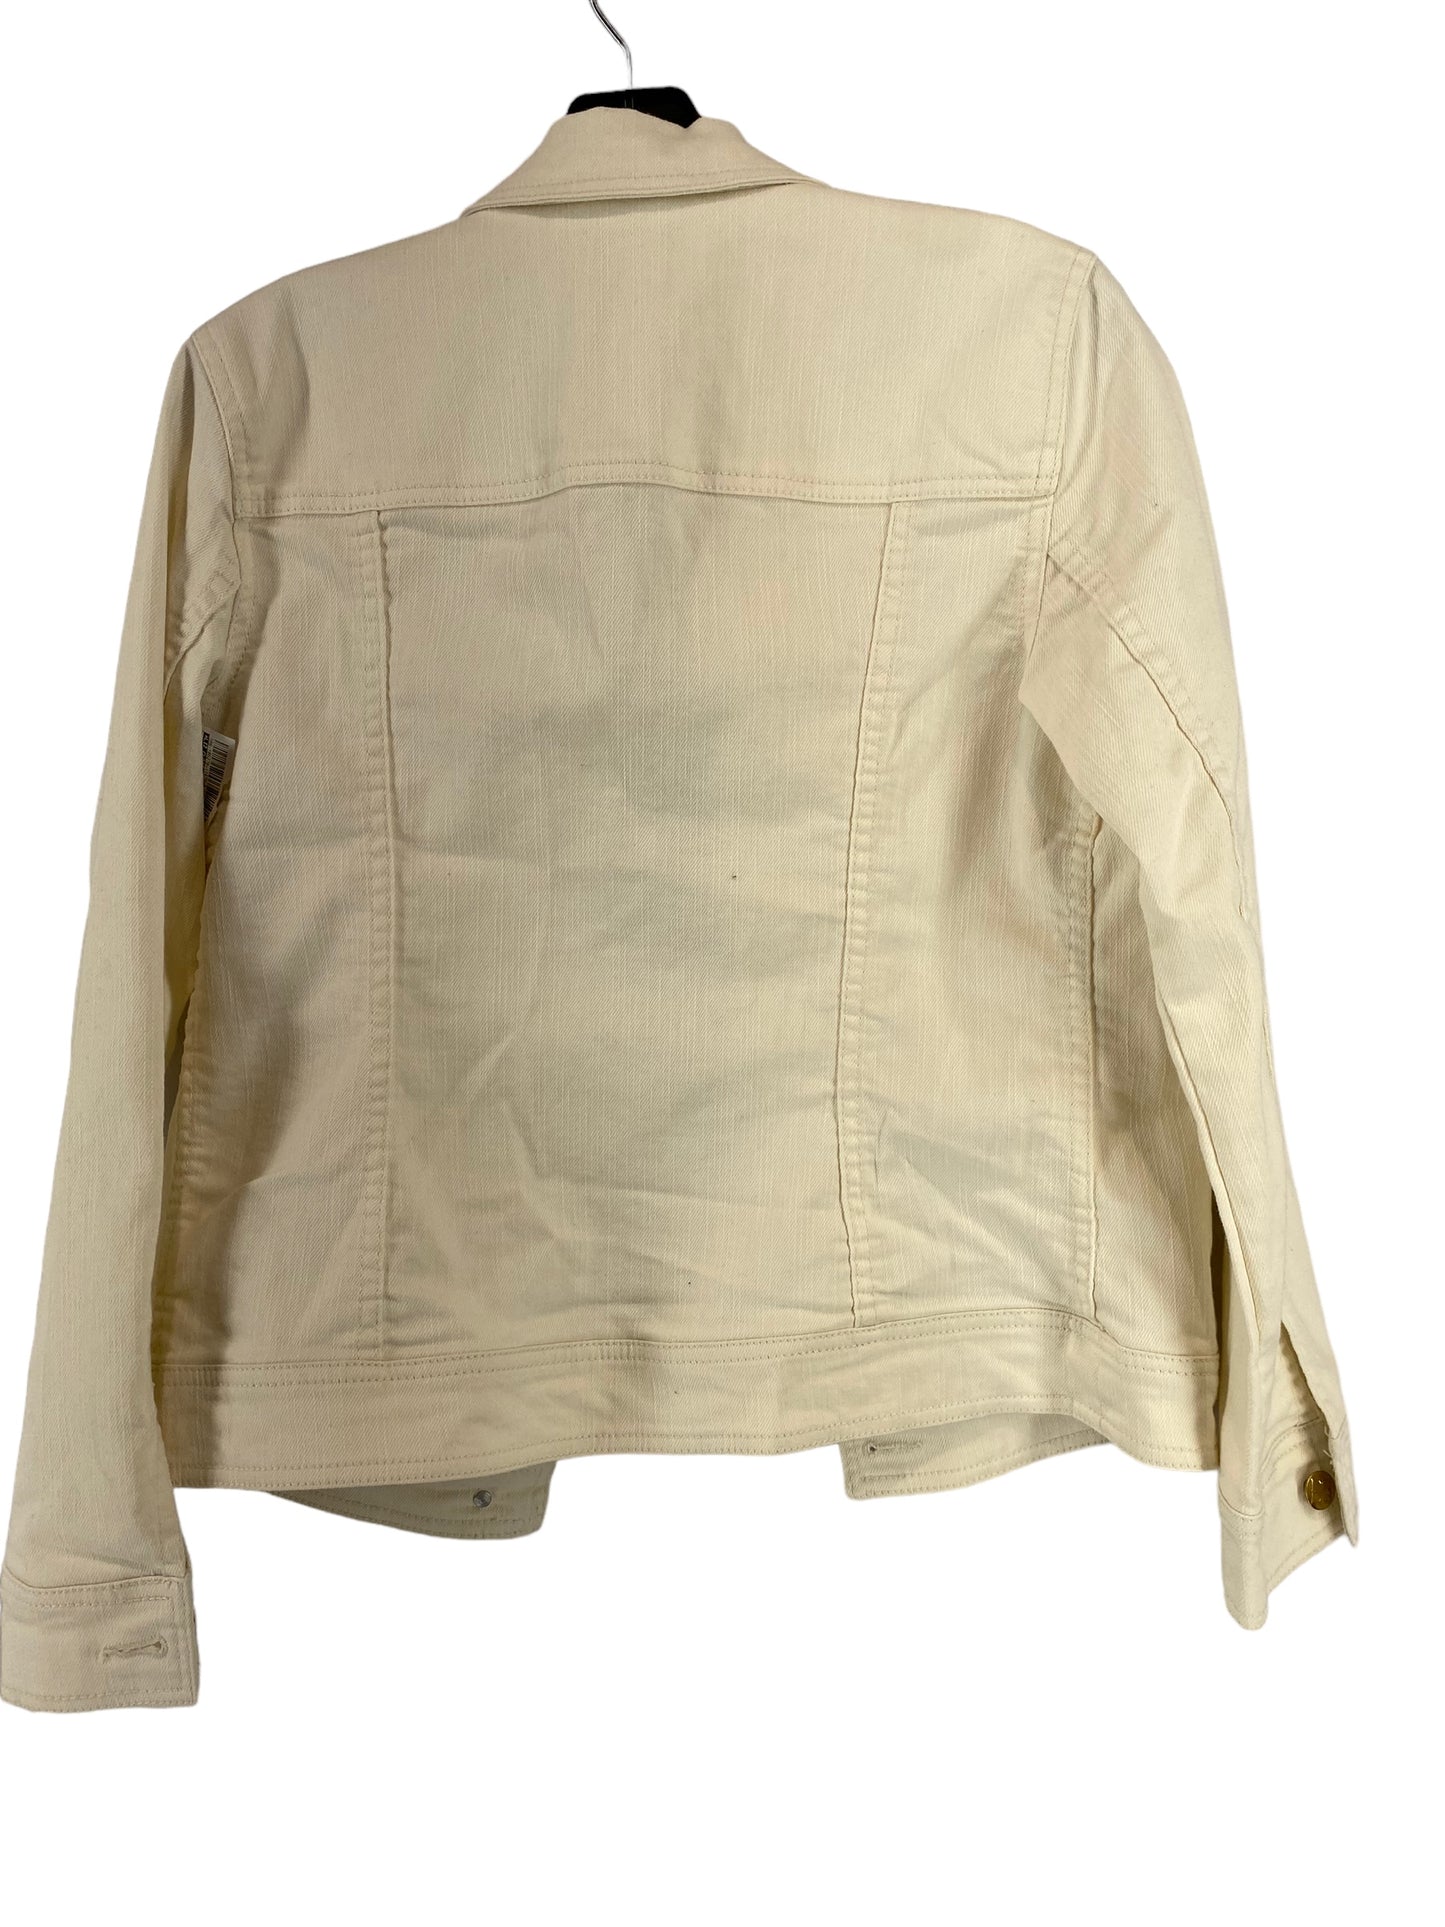 Jacket Denim By Liz Claiborne  Size: 4